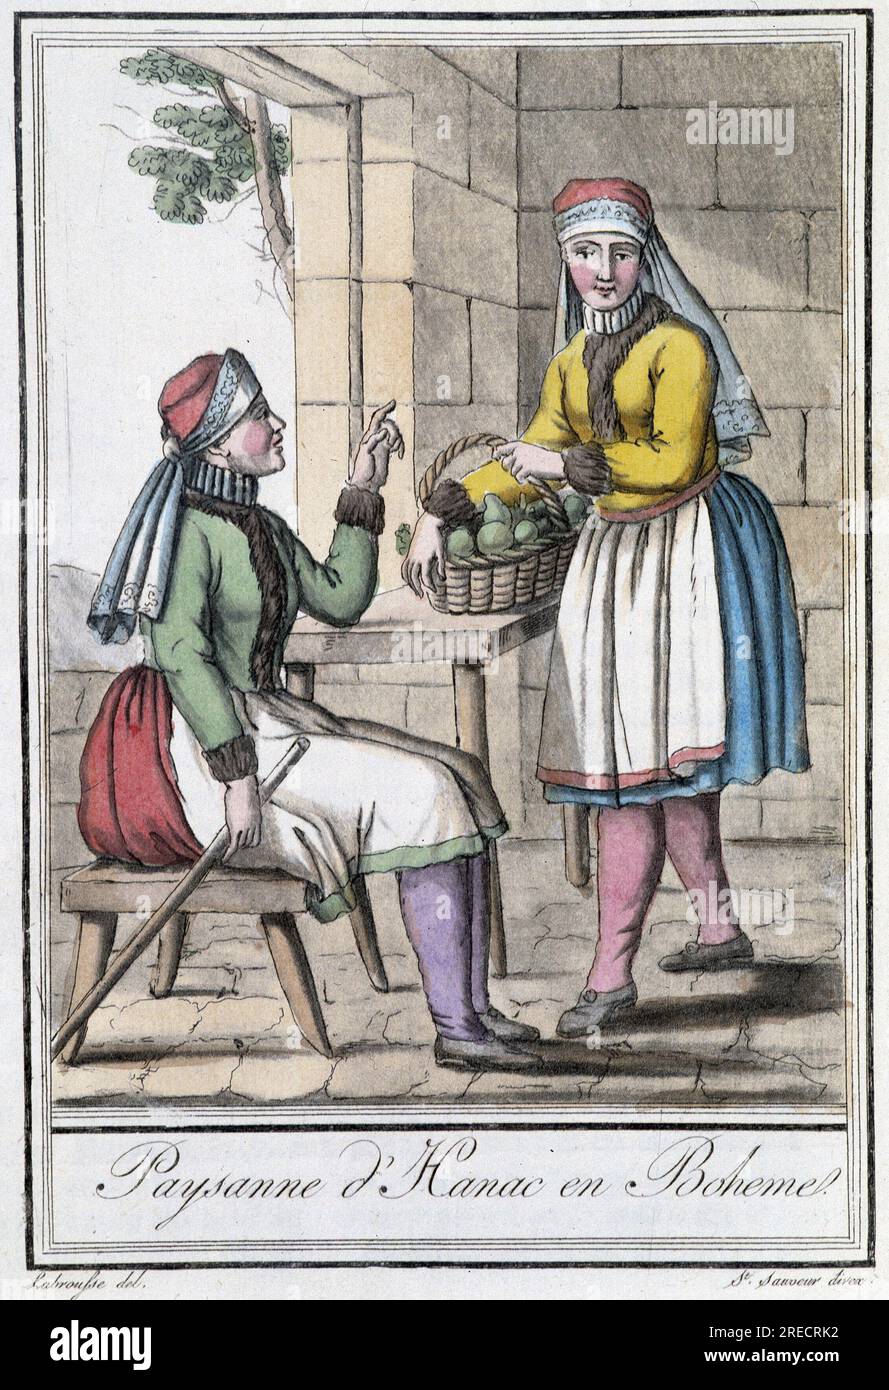 D'Hanac paysanne, en La Boheme (Tchecoslovaquie) - En 'Encyclopedie des voyages' par Grasset St Sauveur, París, 1796 Foto de stock